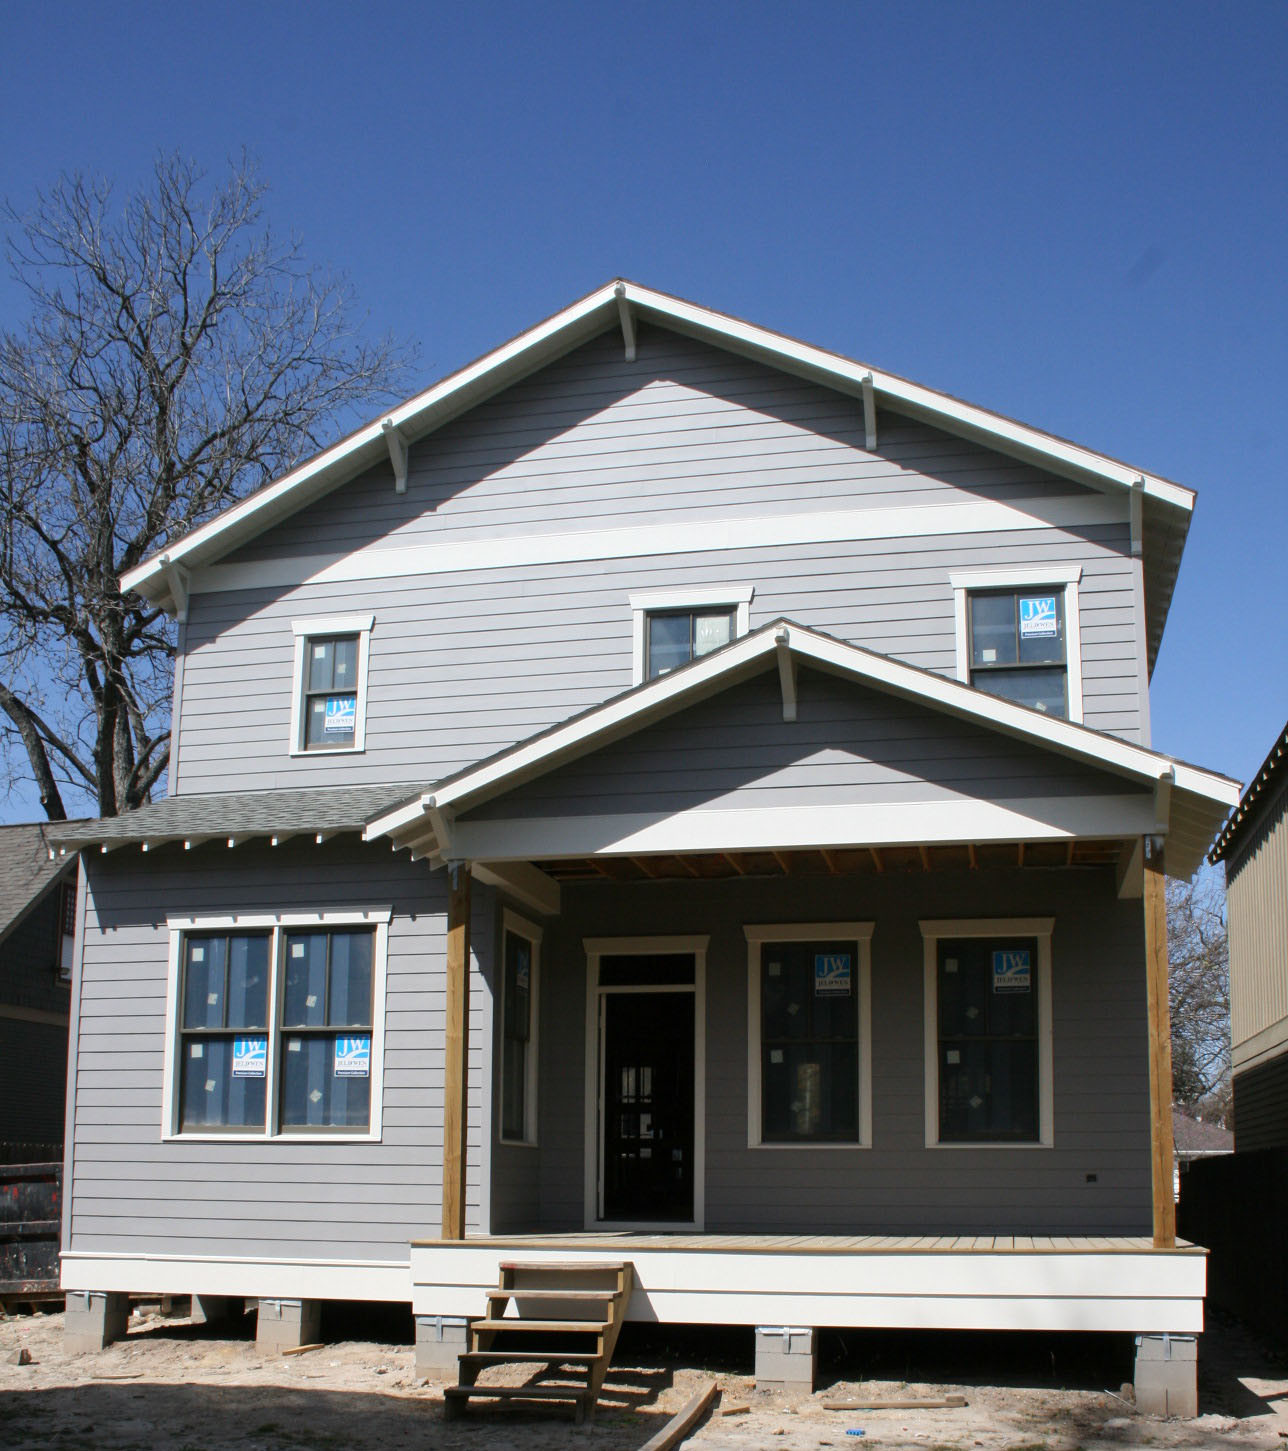 Best ideas about Exterior House Paint Colors
. Save or Pin Our Exterior Paint Colors Cedar Hill Farmhouse Now.